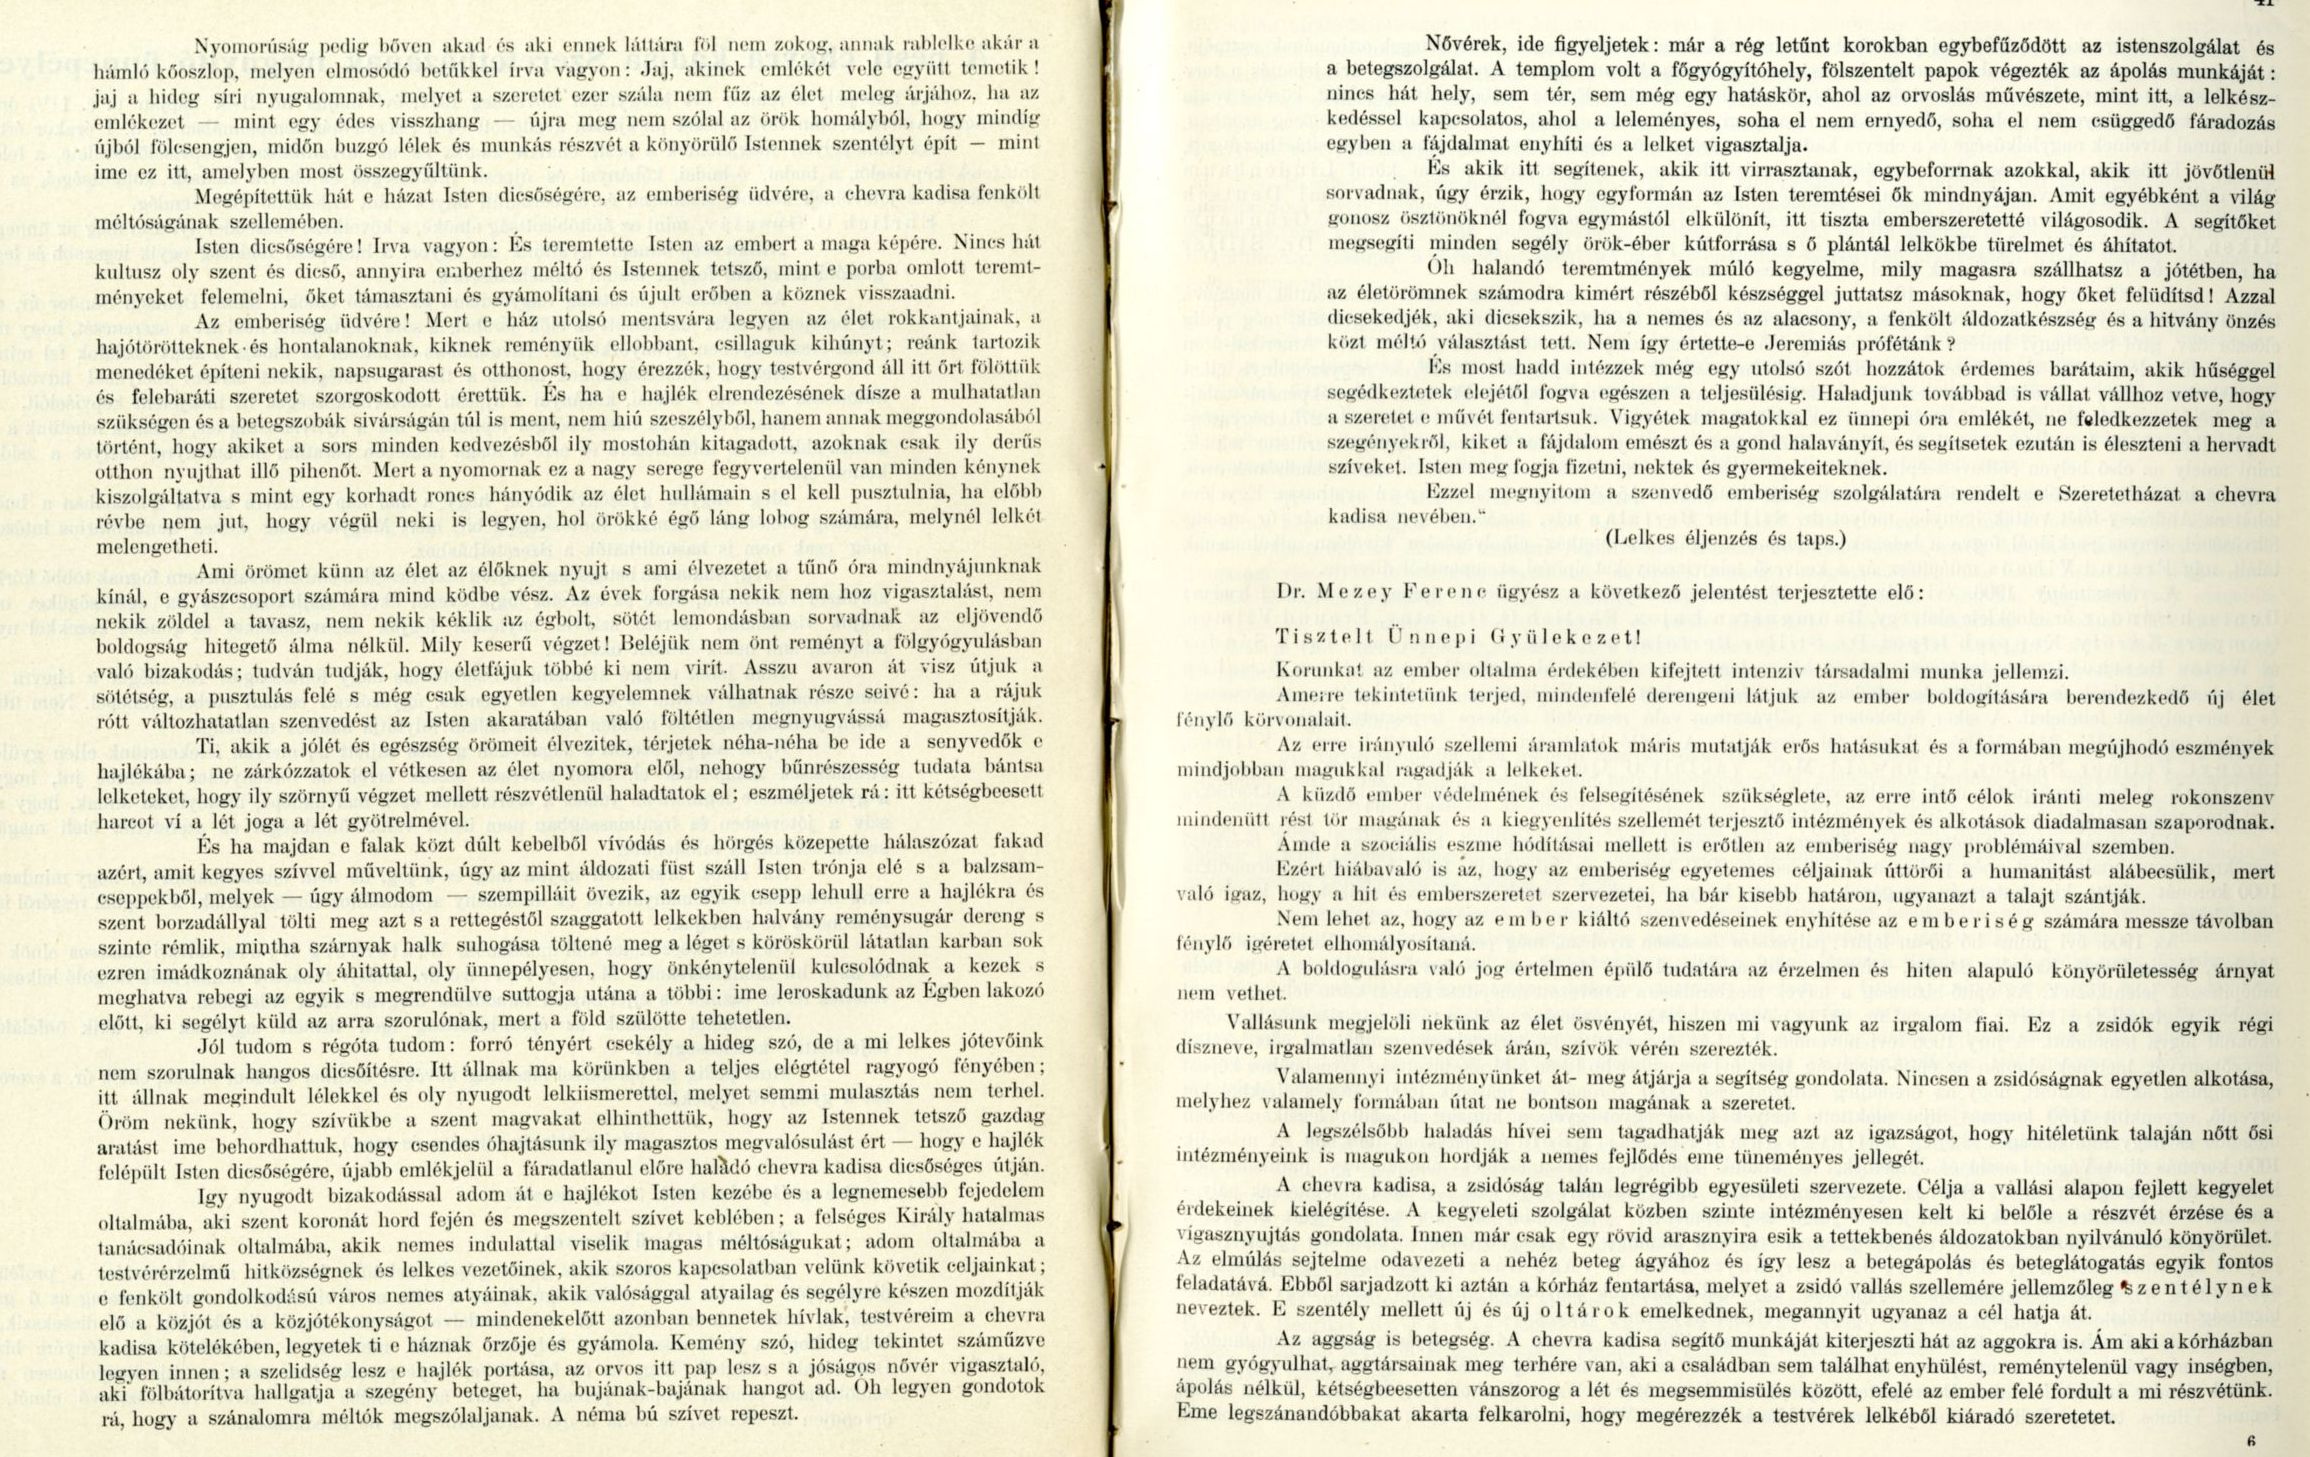 0030_A Pesti Chevra Kadisa elöljáróságának jelentése és kezelési kimutatása az 1910-iki közigazgatási évről. Budapest, 1911.